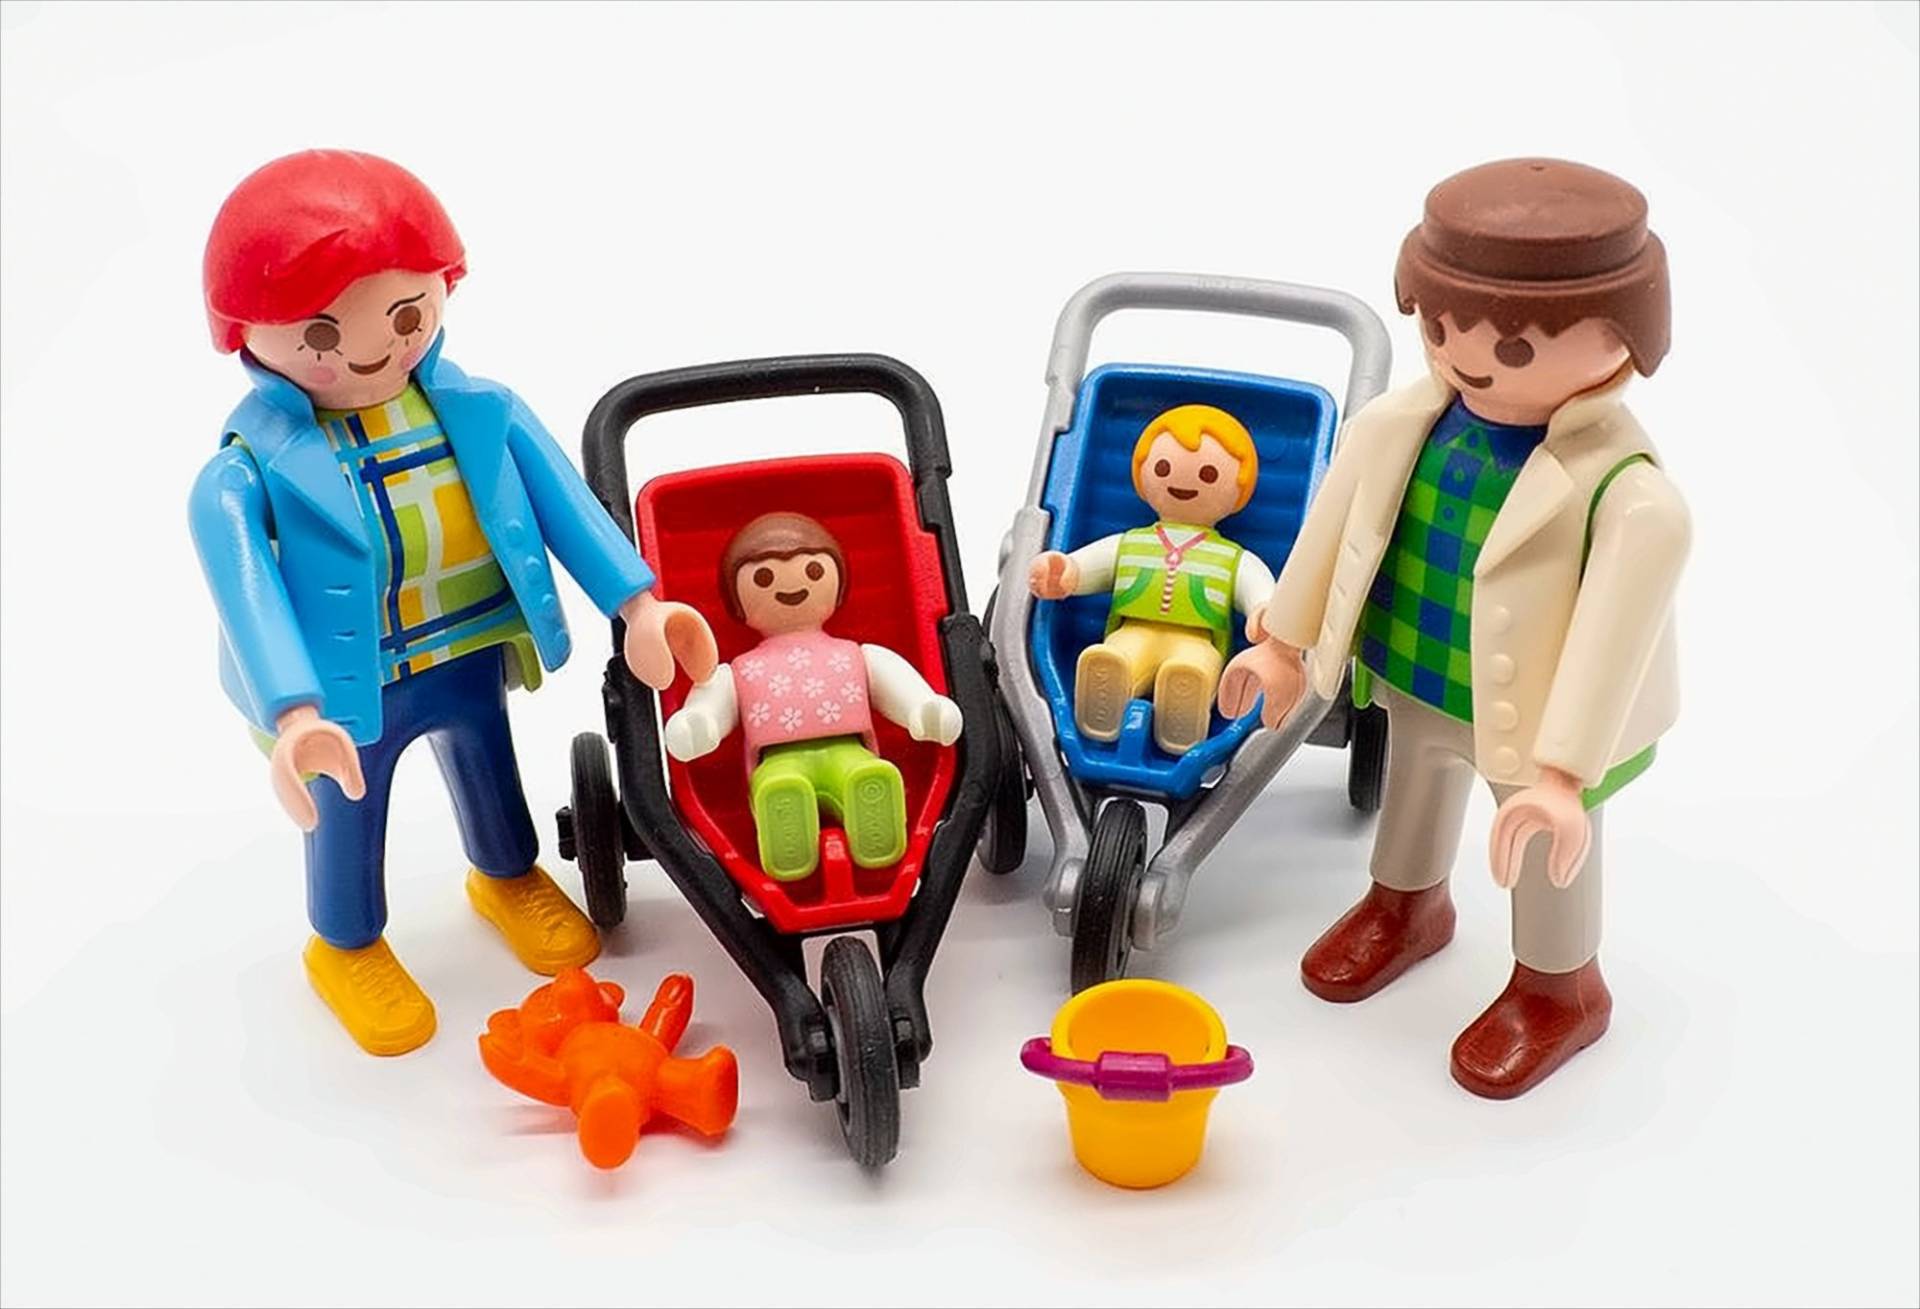 Playmobil Familien-Set von geobra Brandstätter Stiftung & Co. KG